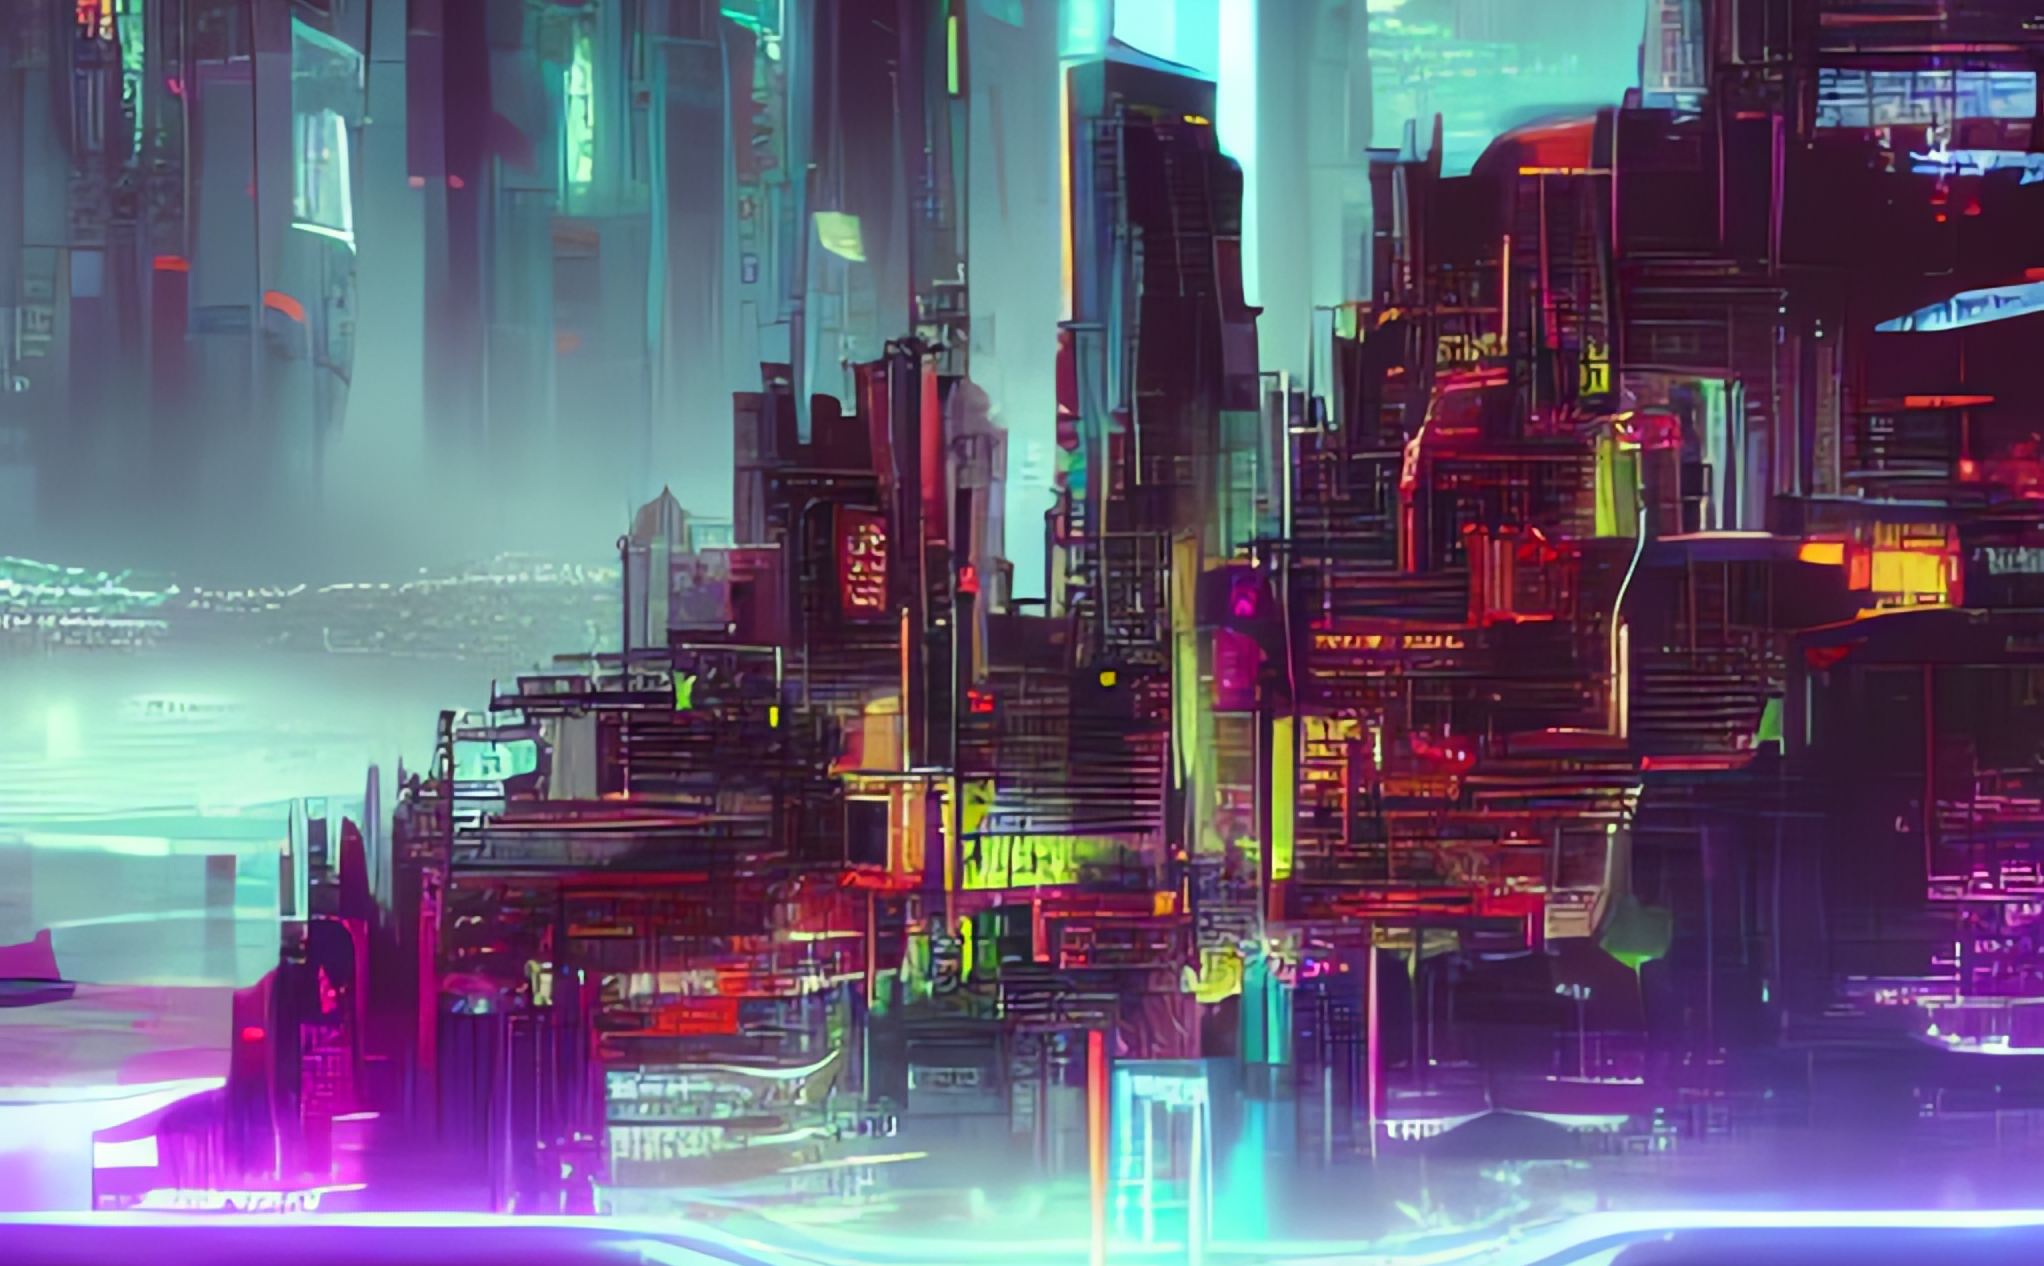 Tag cloud in futuristic cyberpunk landscape